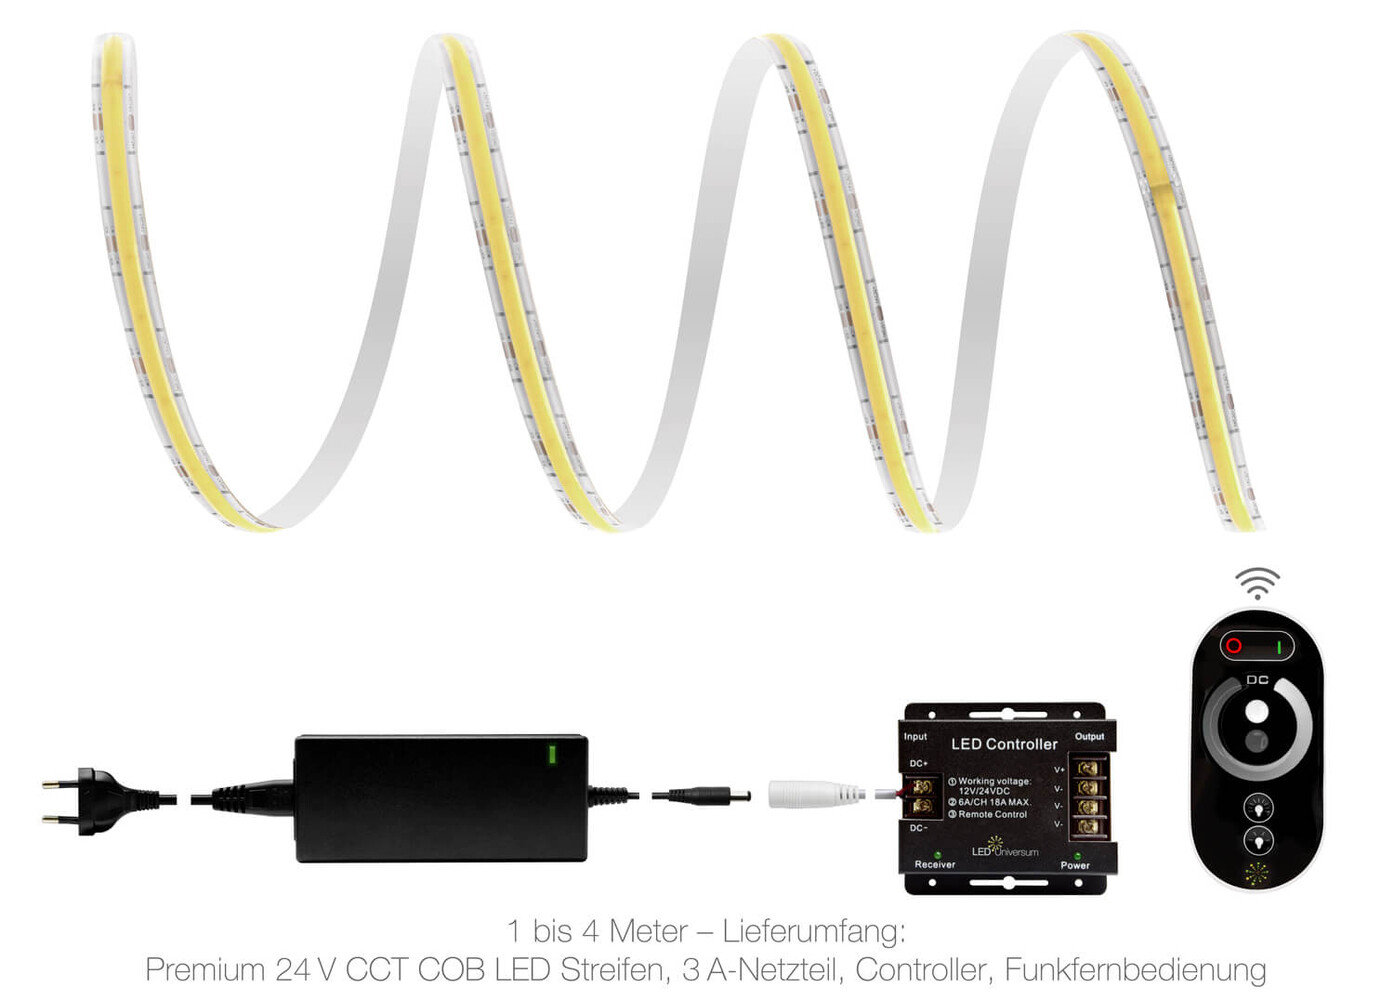 Hochwertiger Premium LED Streifen von LED Universum, 24V, mit innovativer COB Technologie und Funk Set